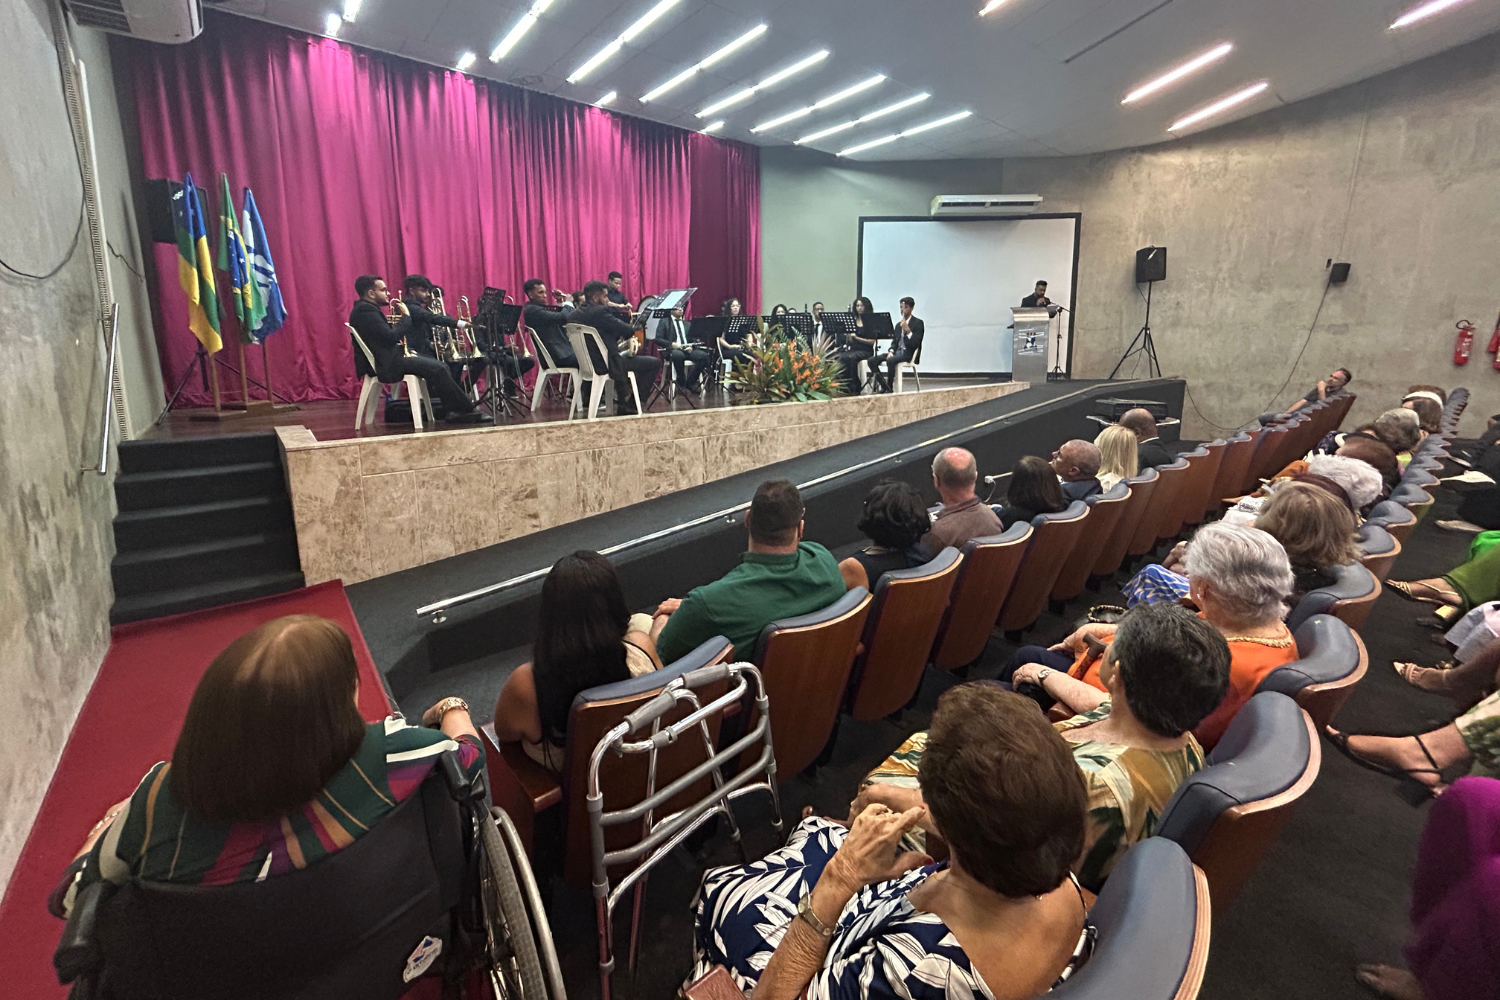 Evento em comemoração aos 70 anos do curso de Serviço Social da UFS foi marcado pela apresentação da Orquestra Sinfônica da UFS. (foto: Ascom UFS)